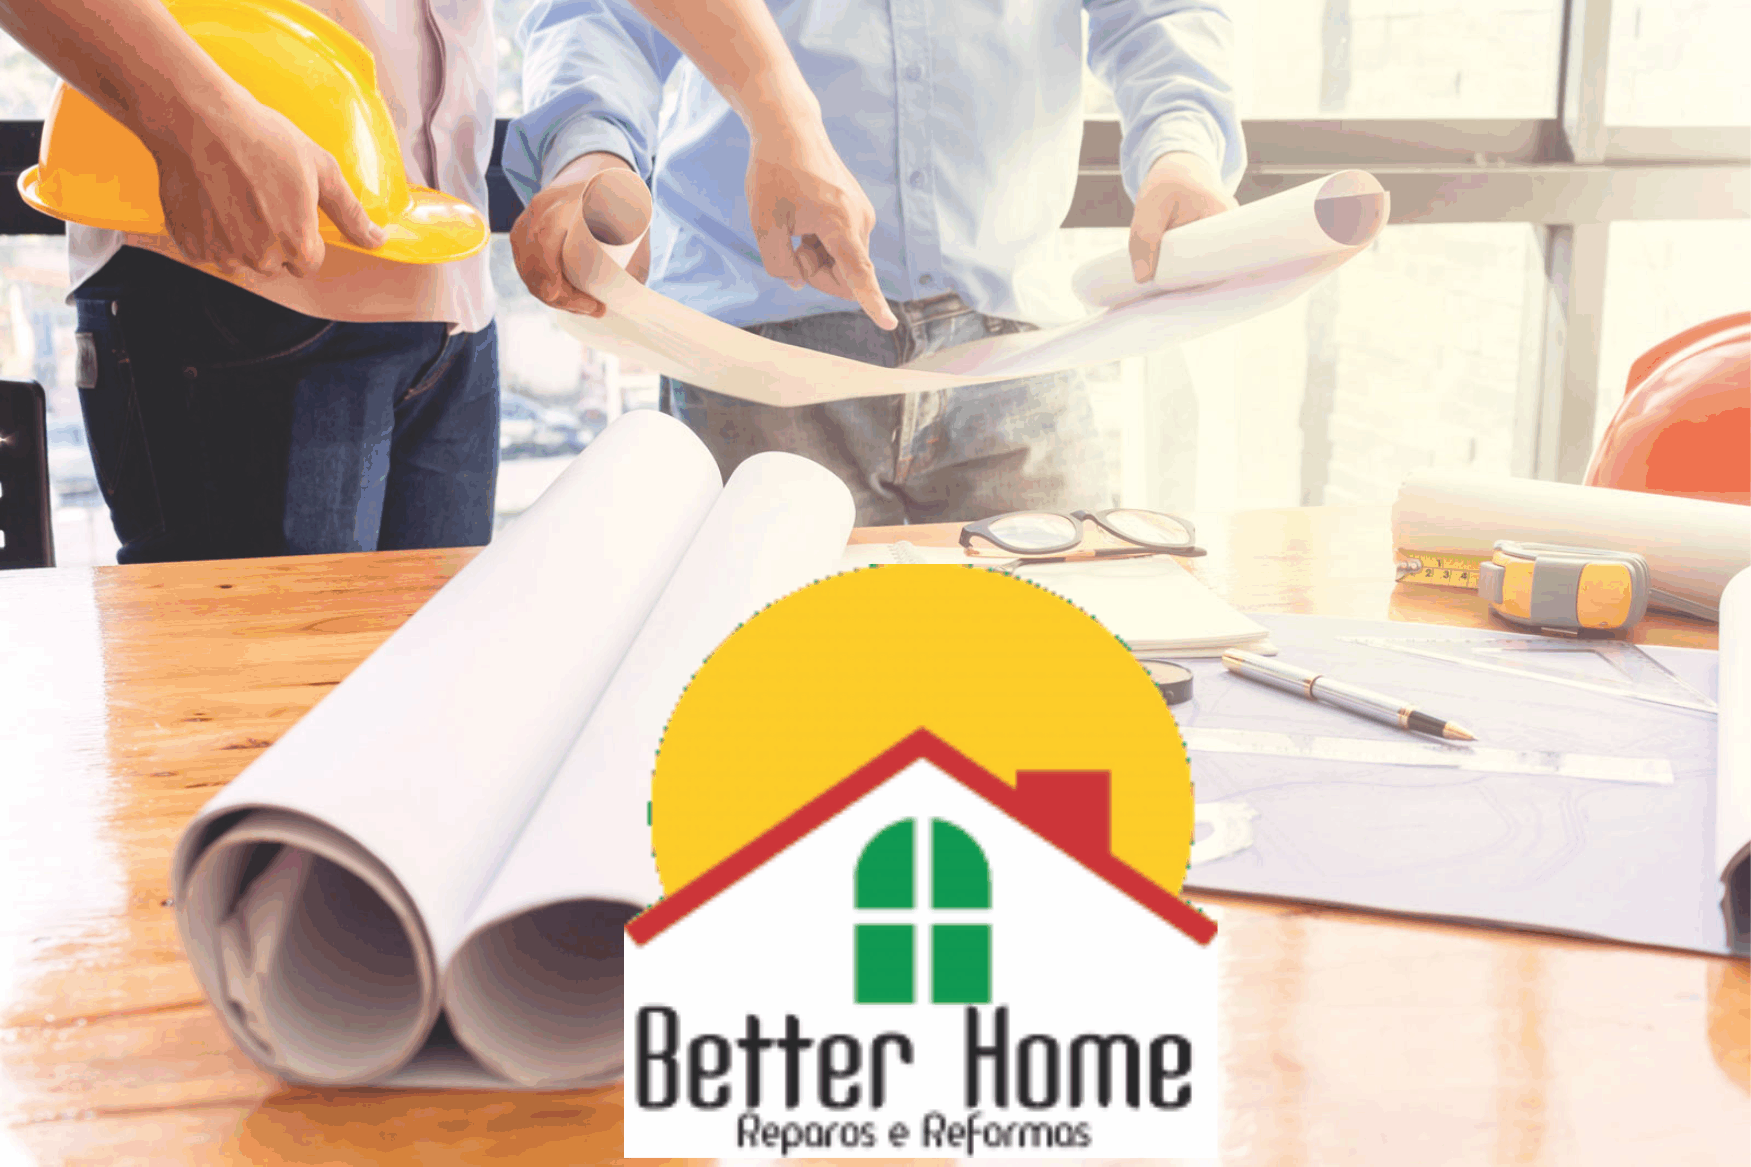 Better Home Reparos e Reformas      Fones: (41) 99888-8885